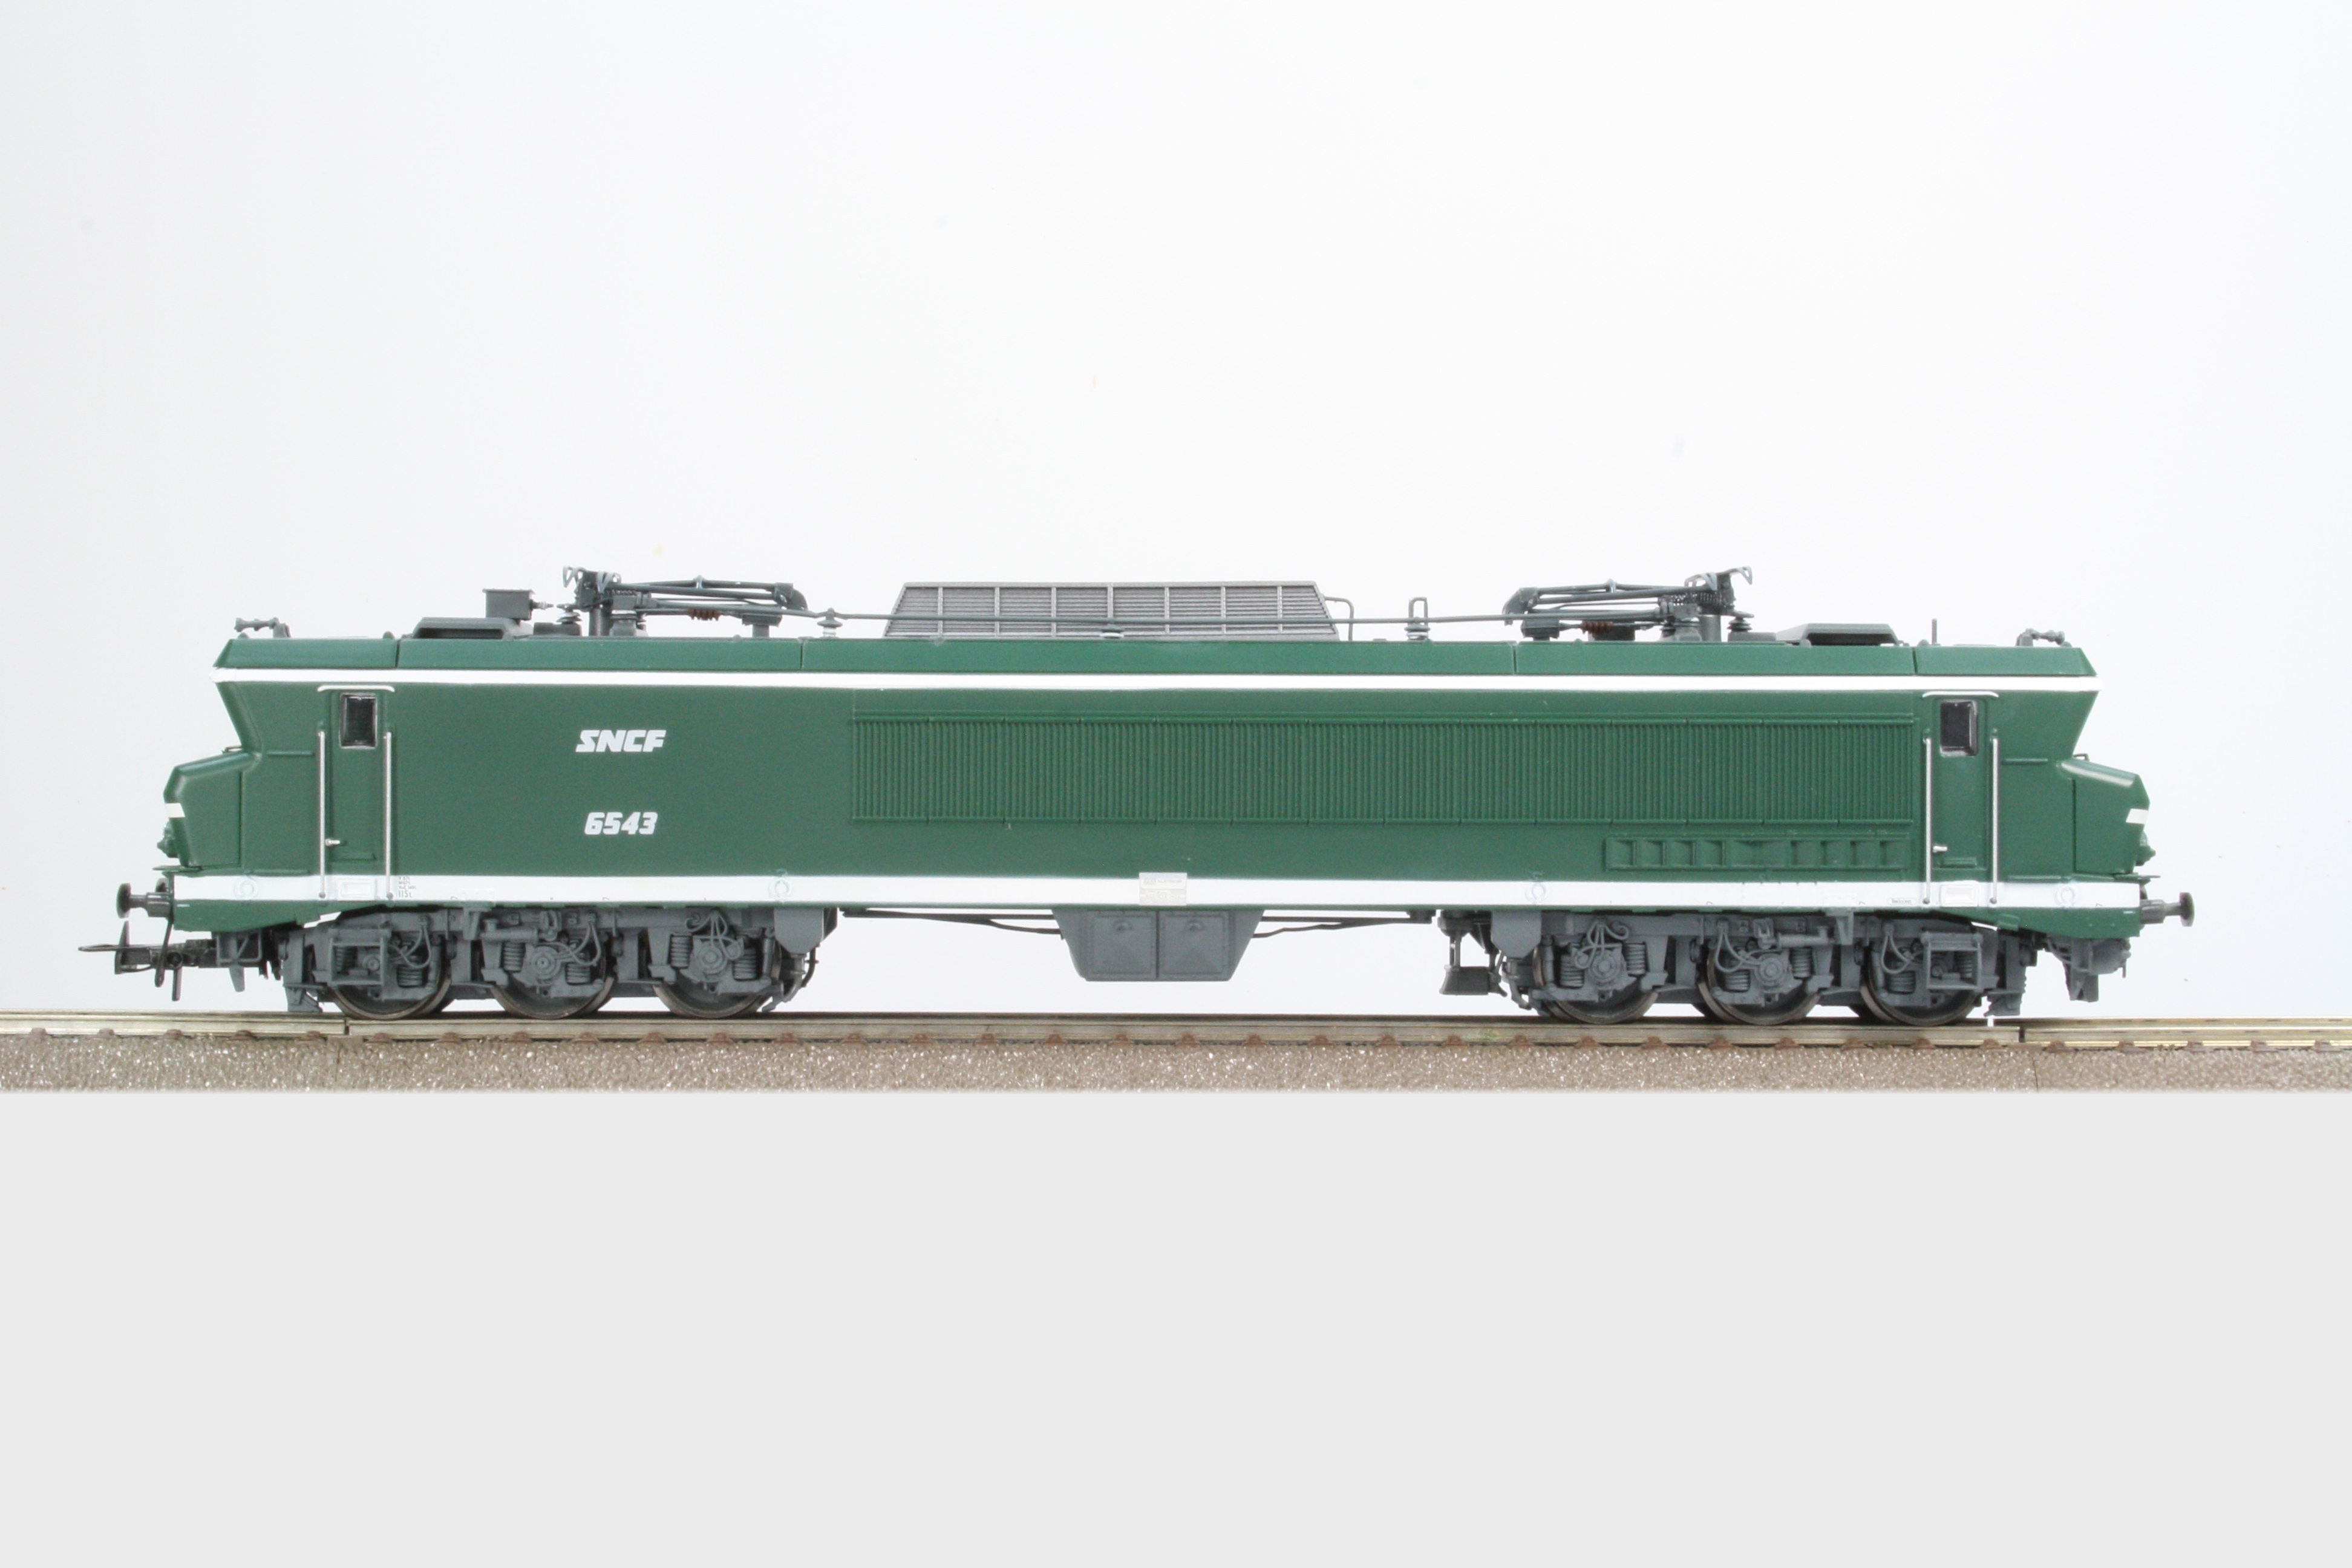 Locomotive électrique CC 21004 JOUEF-HJ2422S - UTM Modélisme Ferroviaire